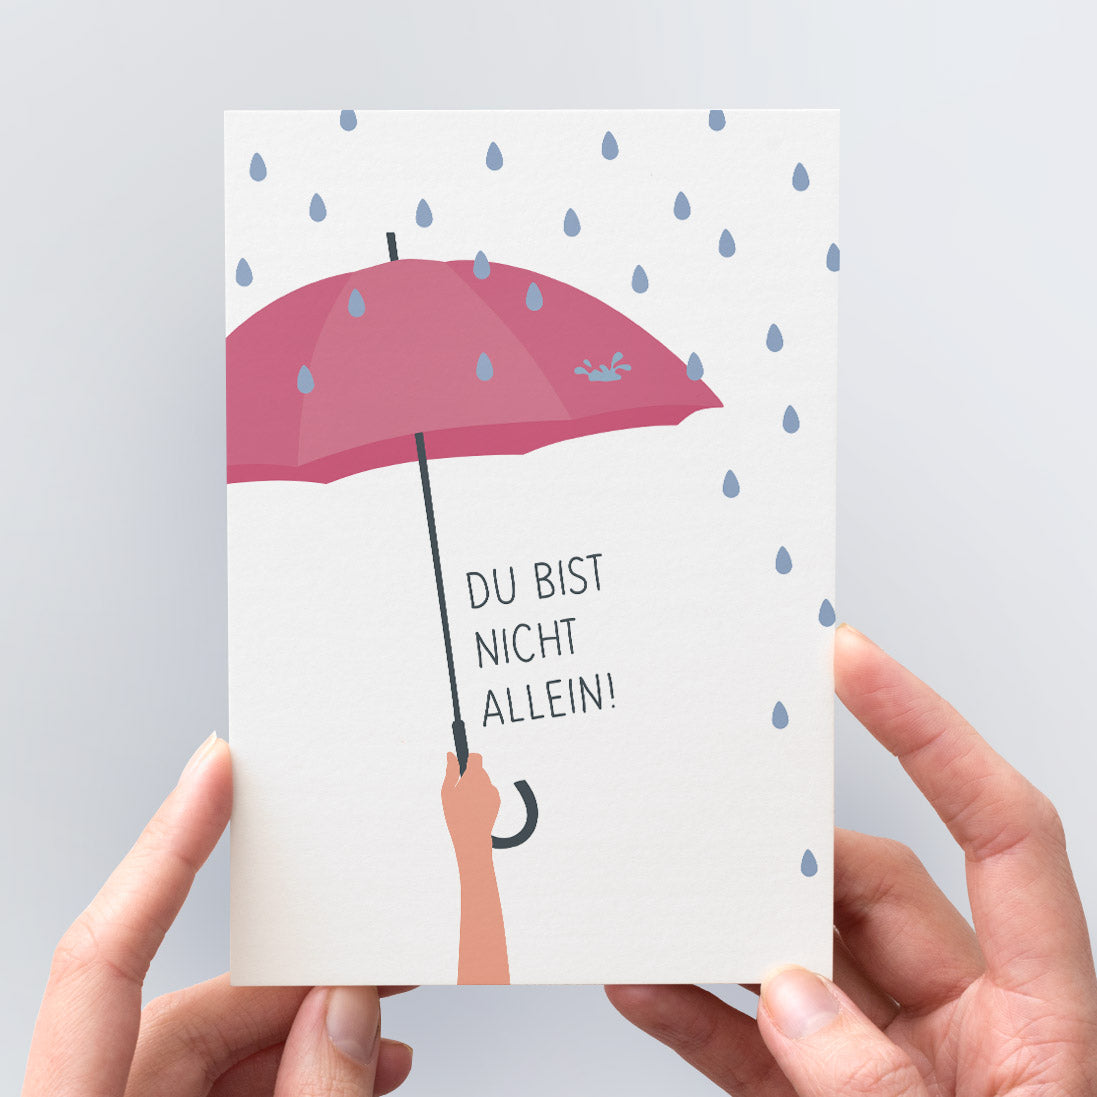 Trost-Postkarte "Du bist nicht allein" - Die Illustration zeigt eine Hand, die einen schützenden Regenschirm hält.